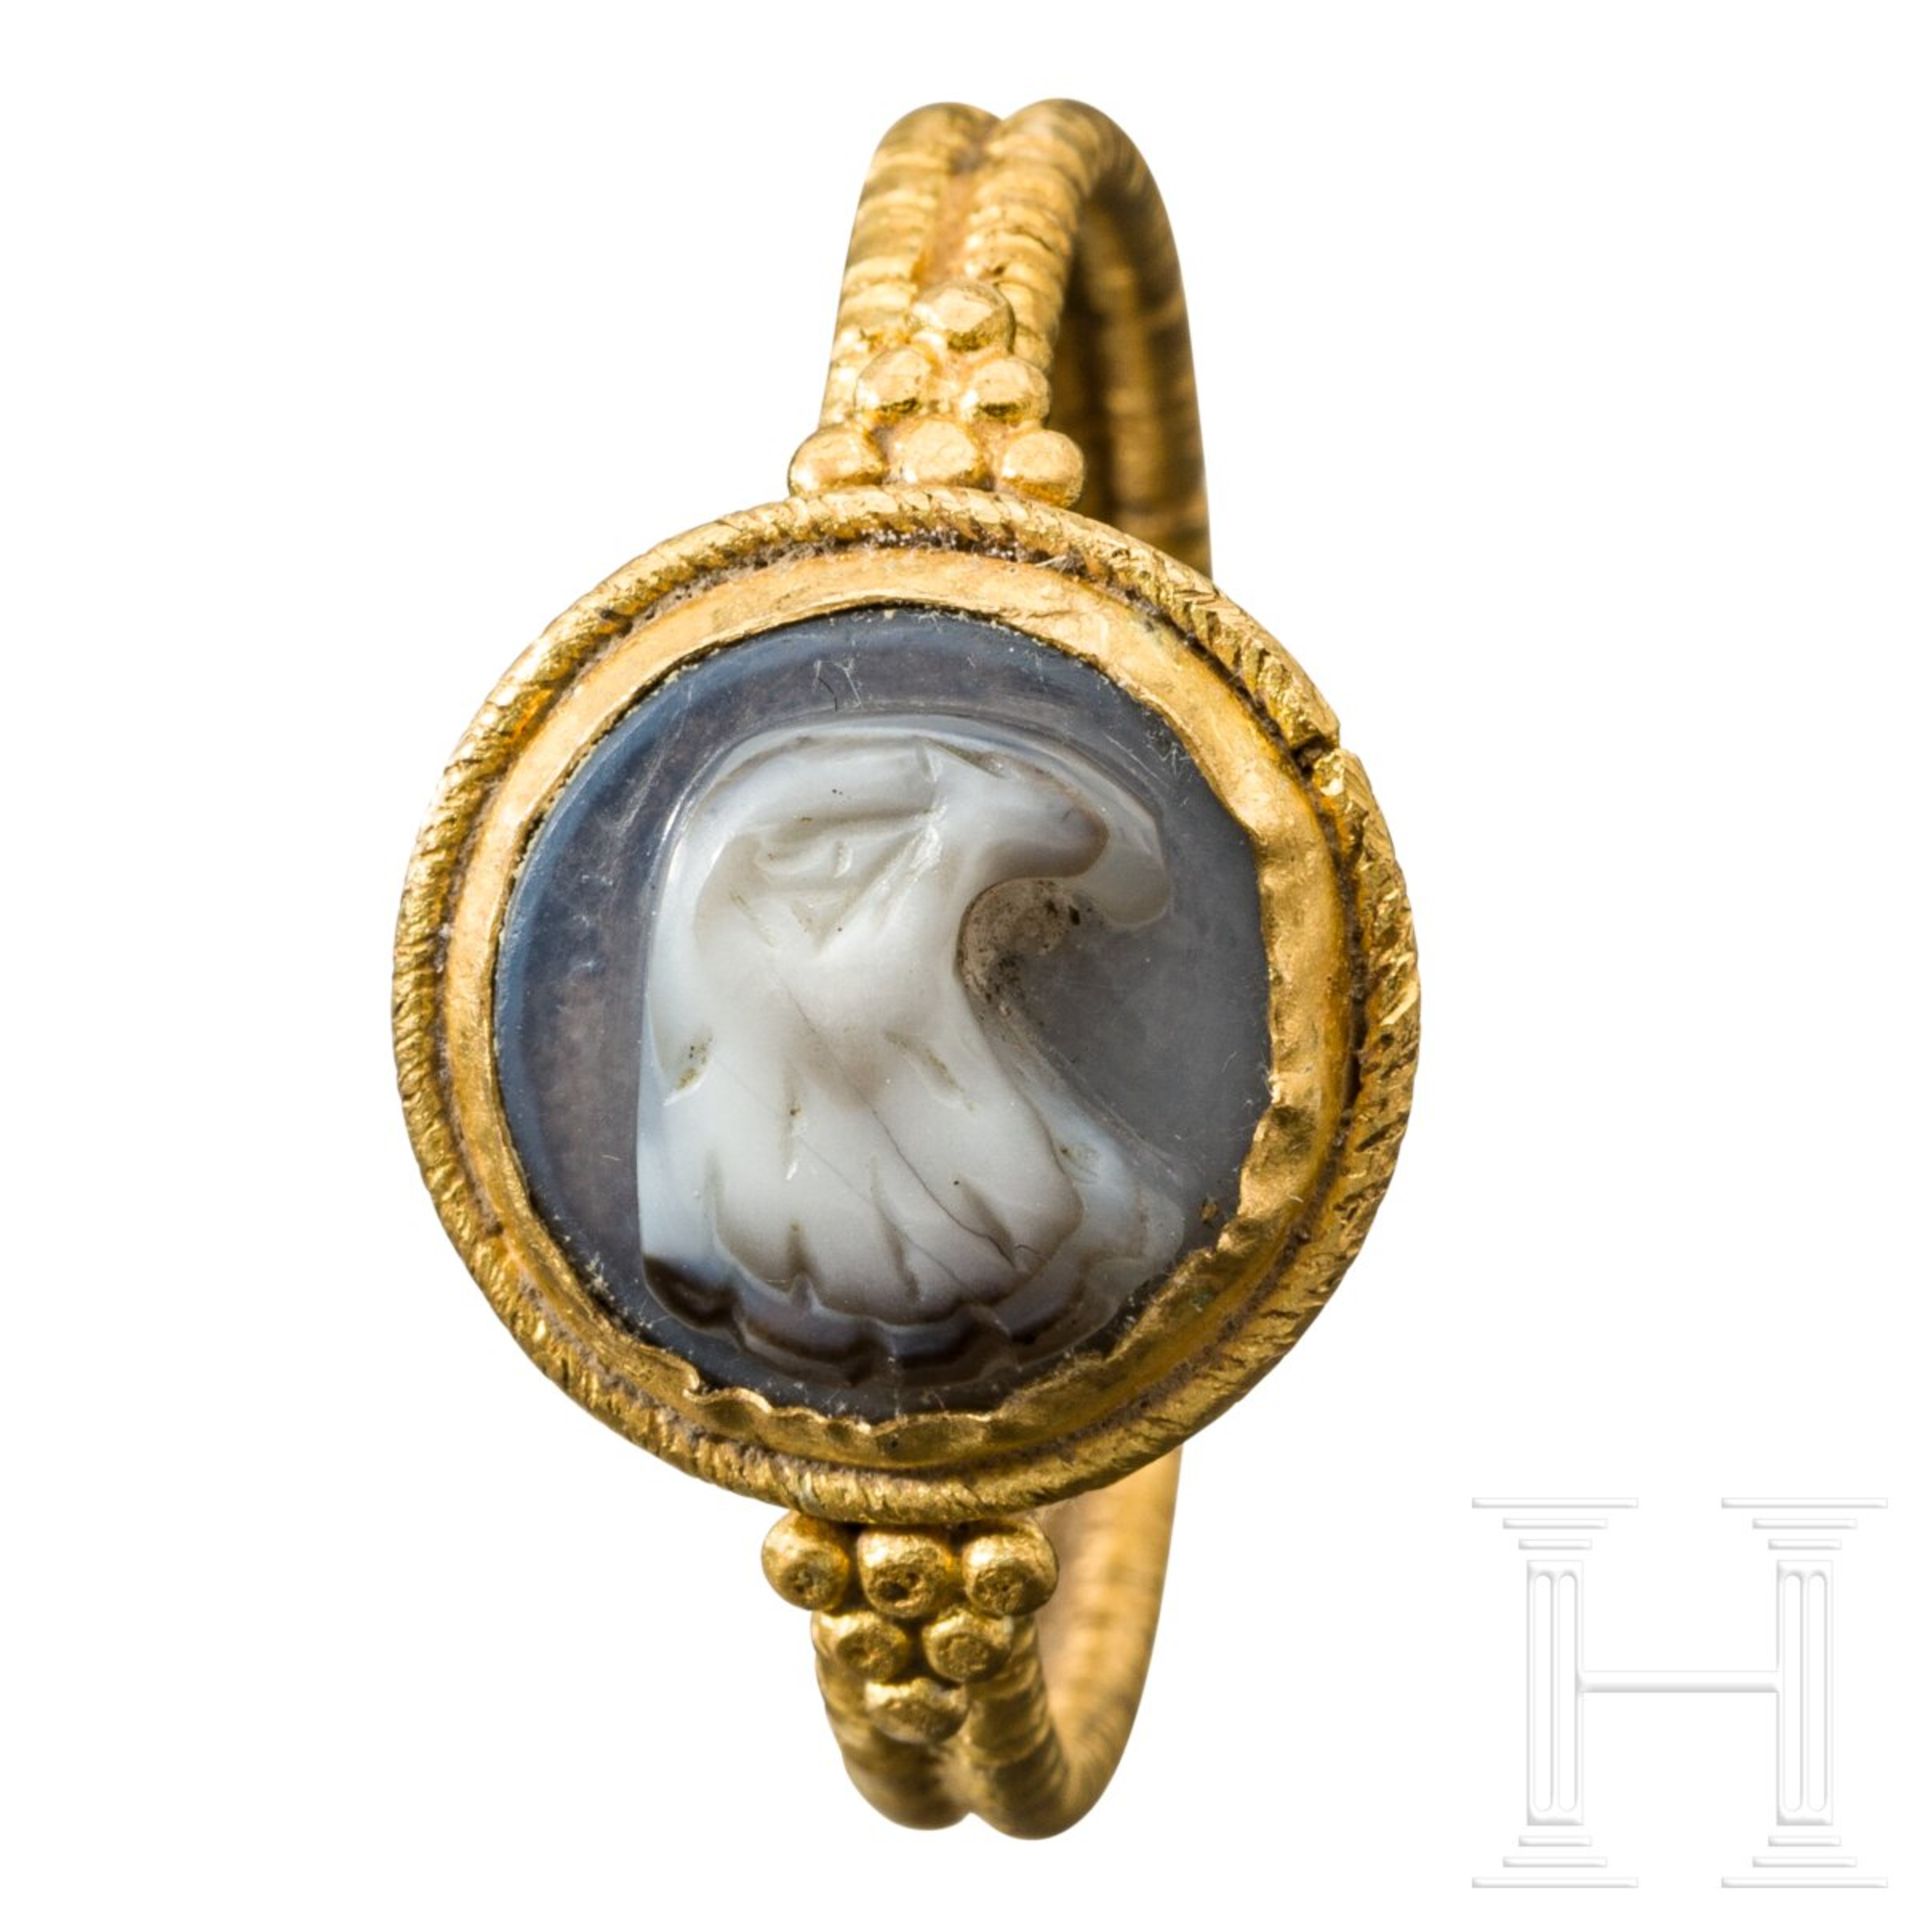 Goldener Ring mit Adlerkopf-Gemme im römischen Stil, 20. Jhdt. - Bild 2 aus 4